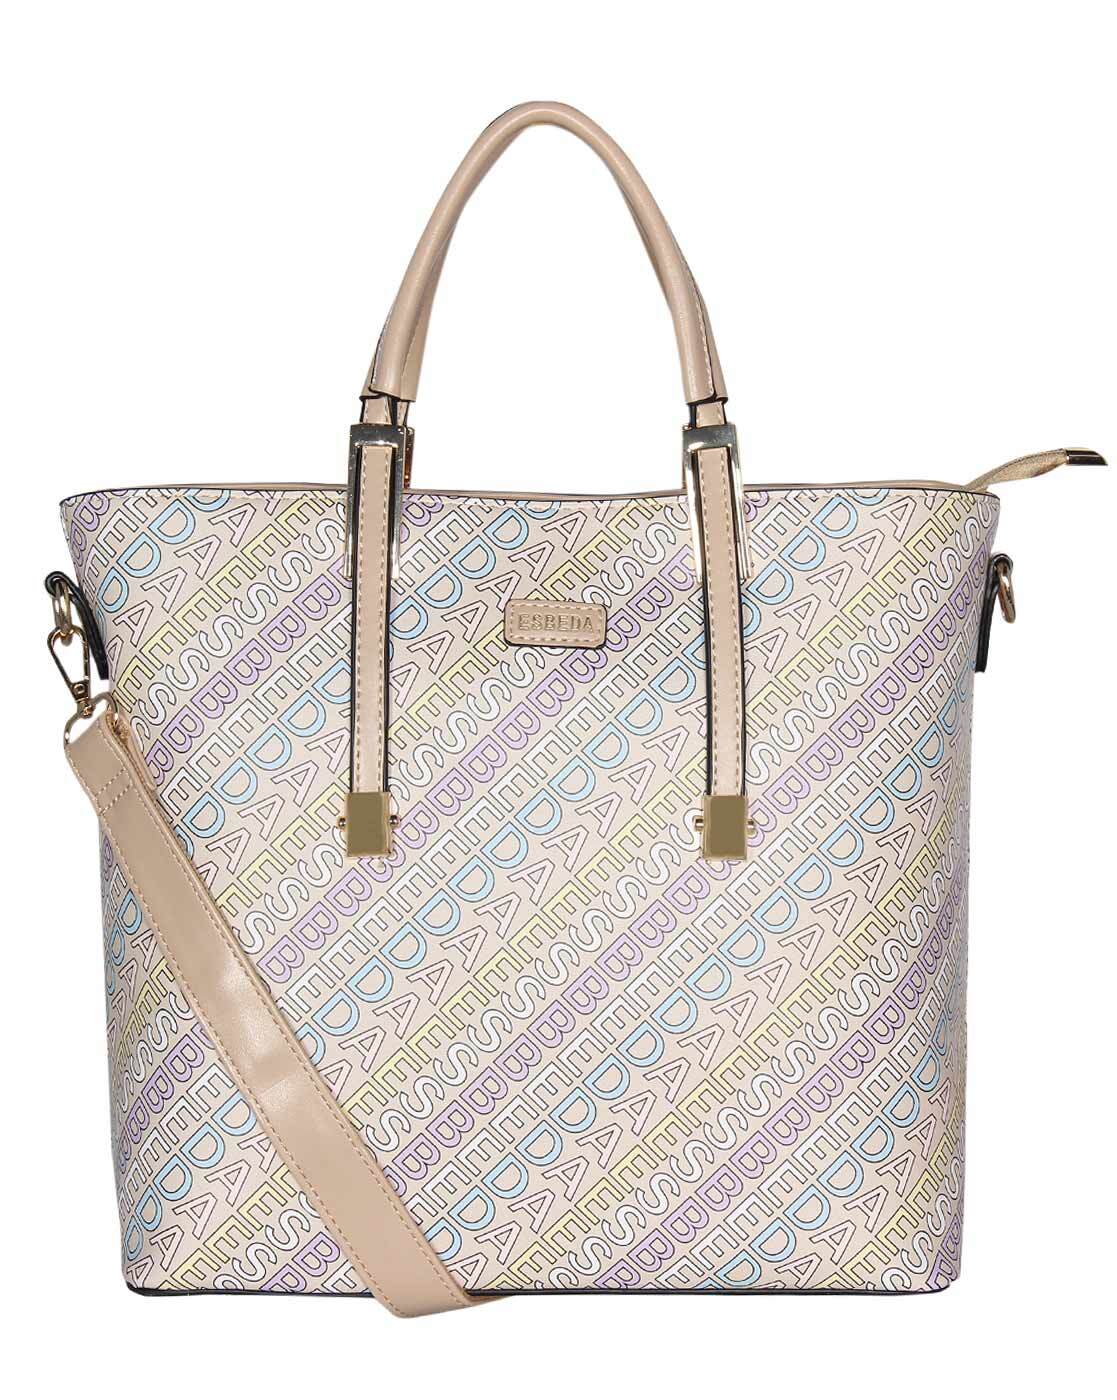 Buy ESBEDA Beige Color Satchel Handbag for Women Online